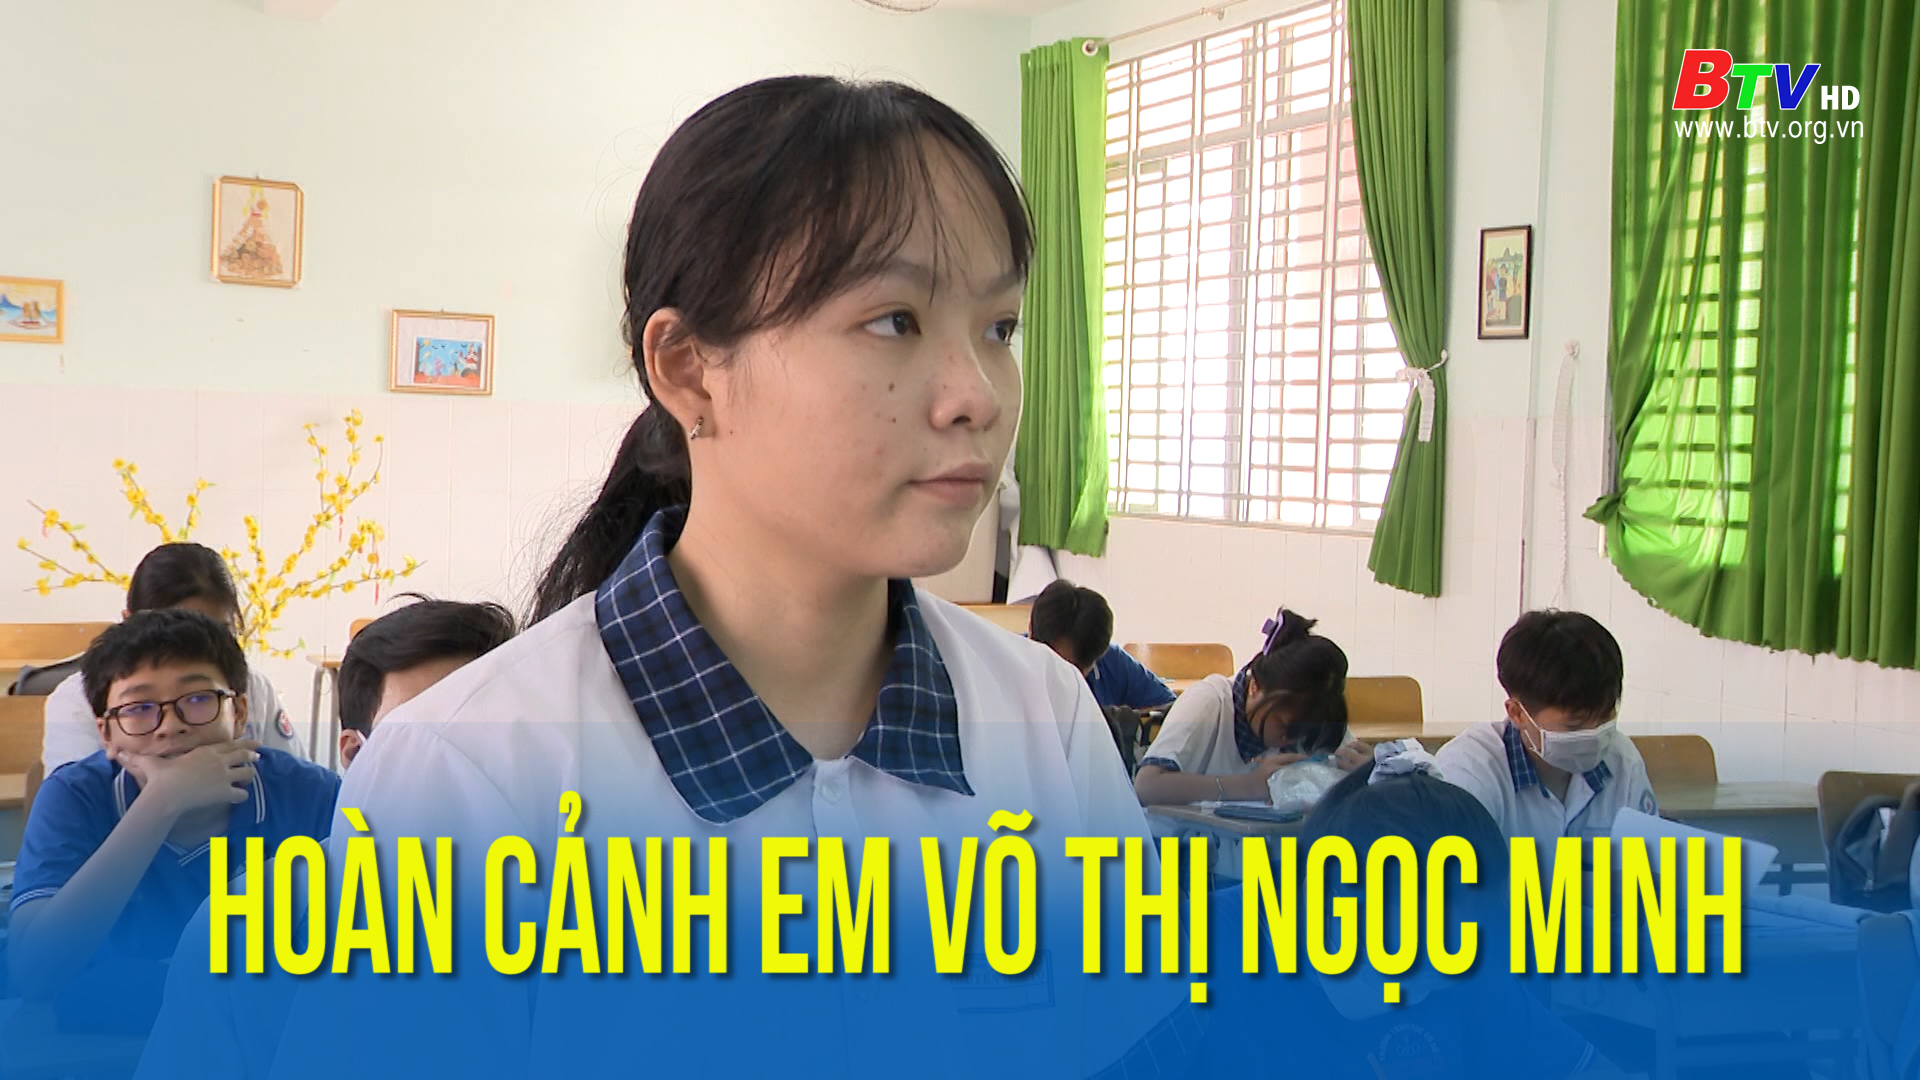 Hoàn cảnh em Võ Thị Ngọc Minh